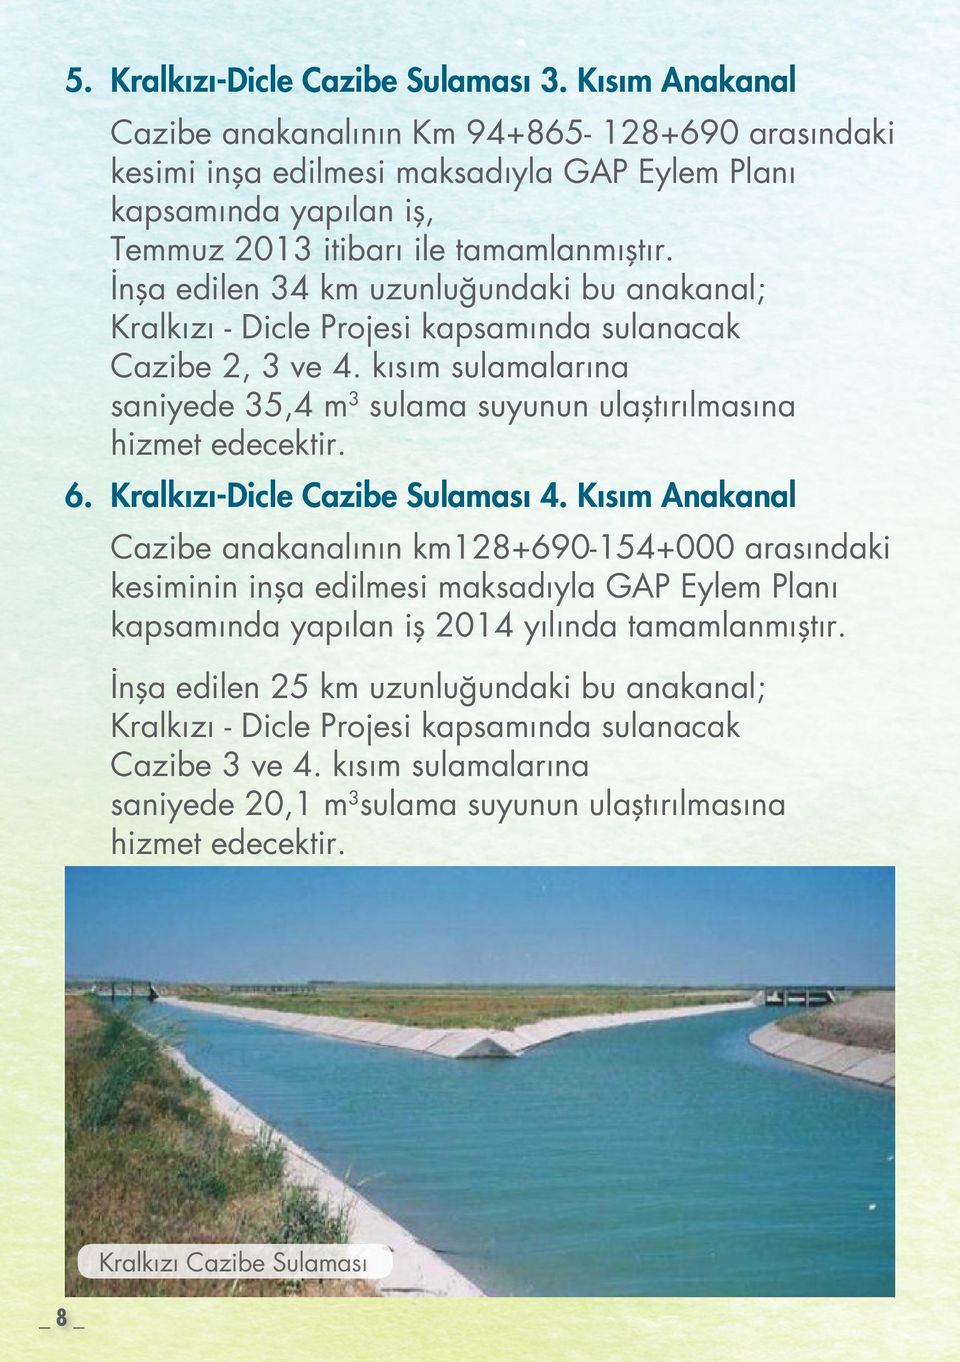 İnşa edilen 34 km uzunluğundaki bu anakanal; Kralkızı - Dicle Projesi kapsamında sulanacak Cazibe 2, 3 ve 4. kısım sulamalarına saniyede 35,4 m 3 sulama suyunun ulaştırılmasına hizmet edecektir. 6.